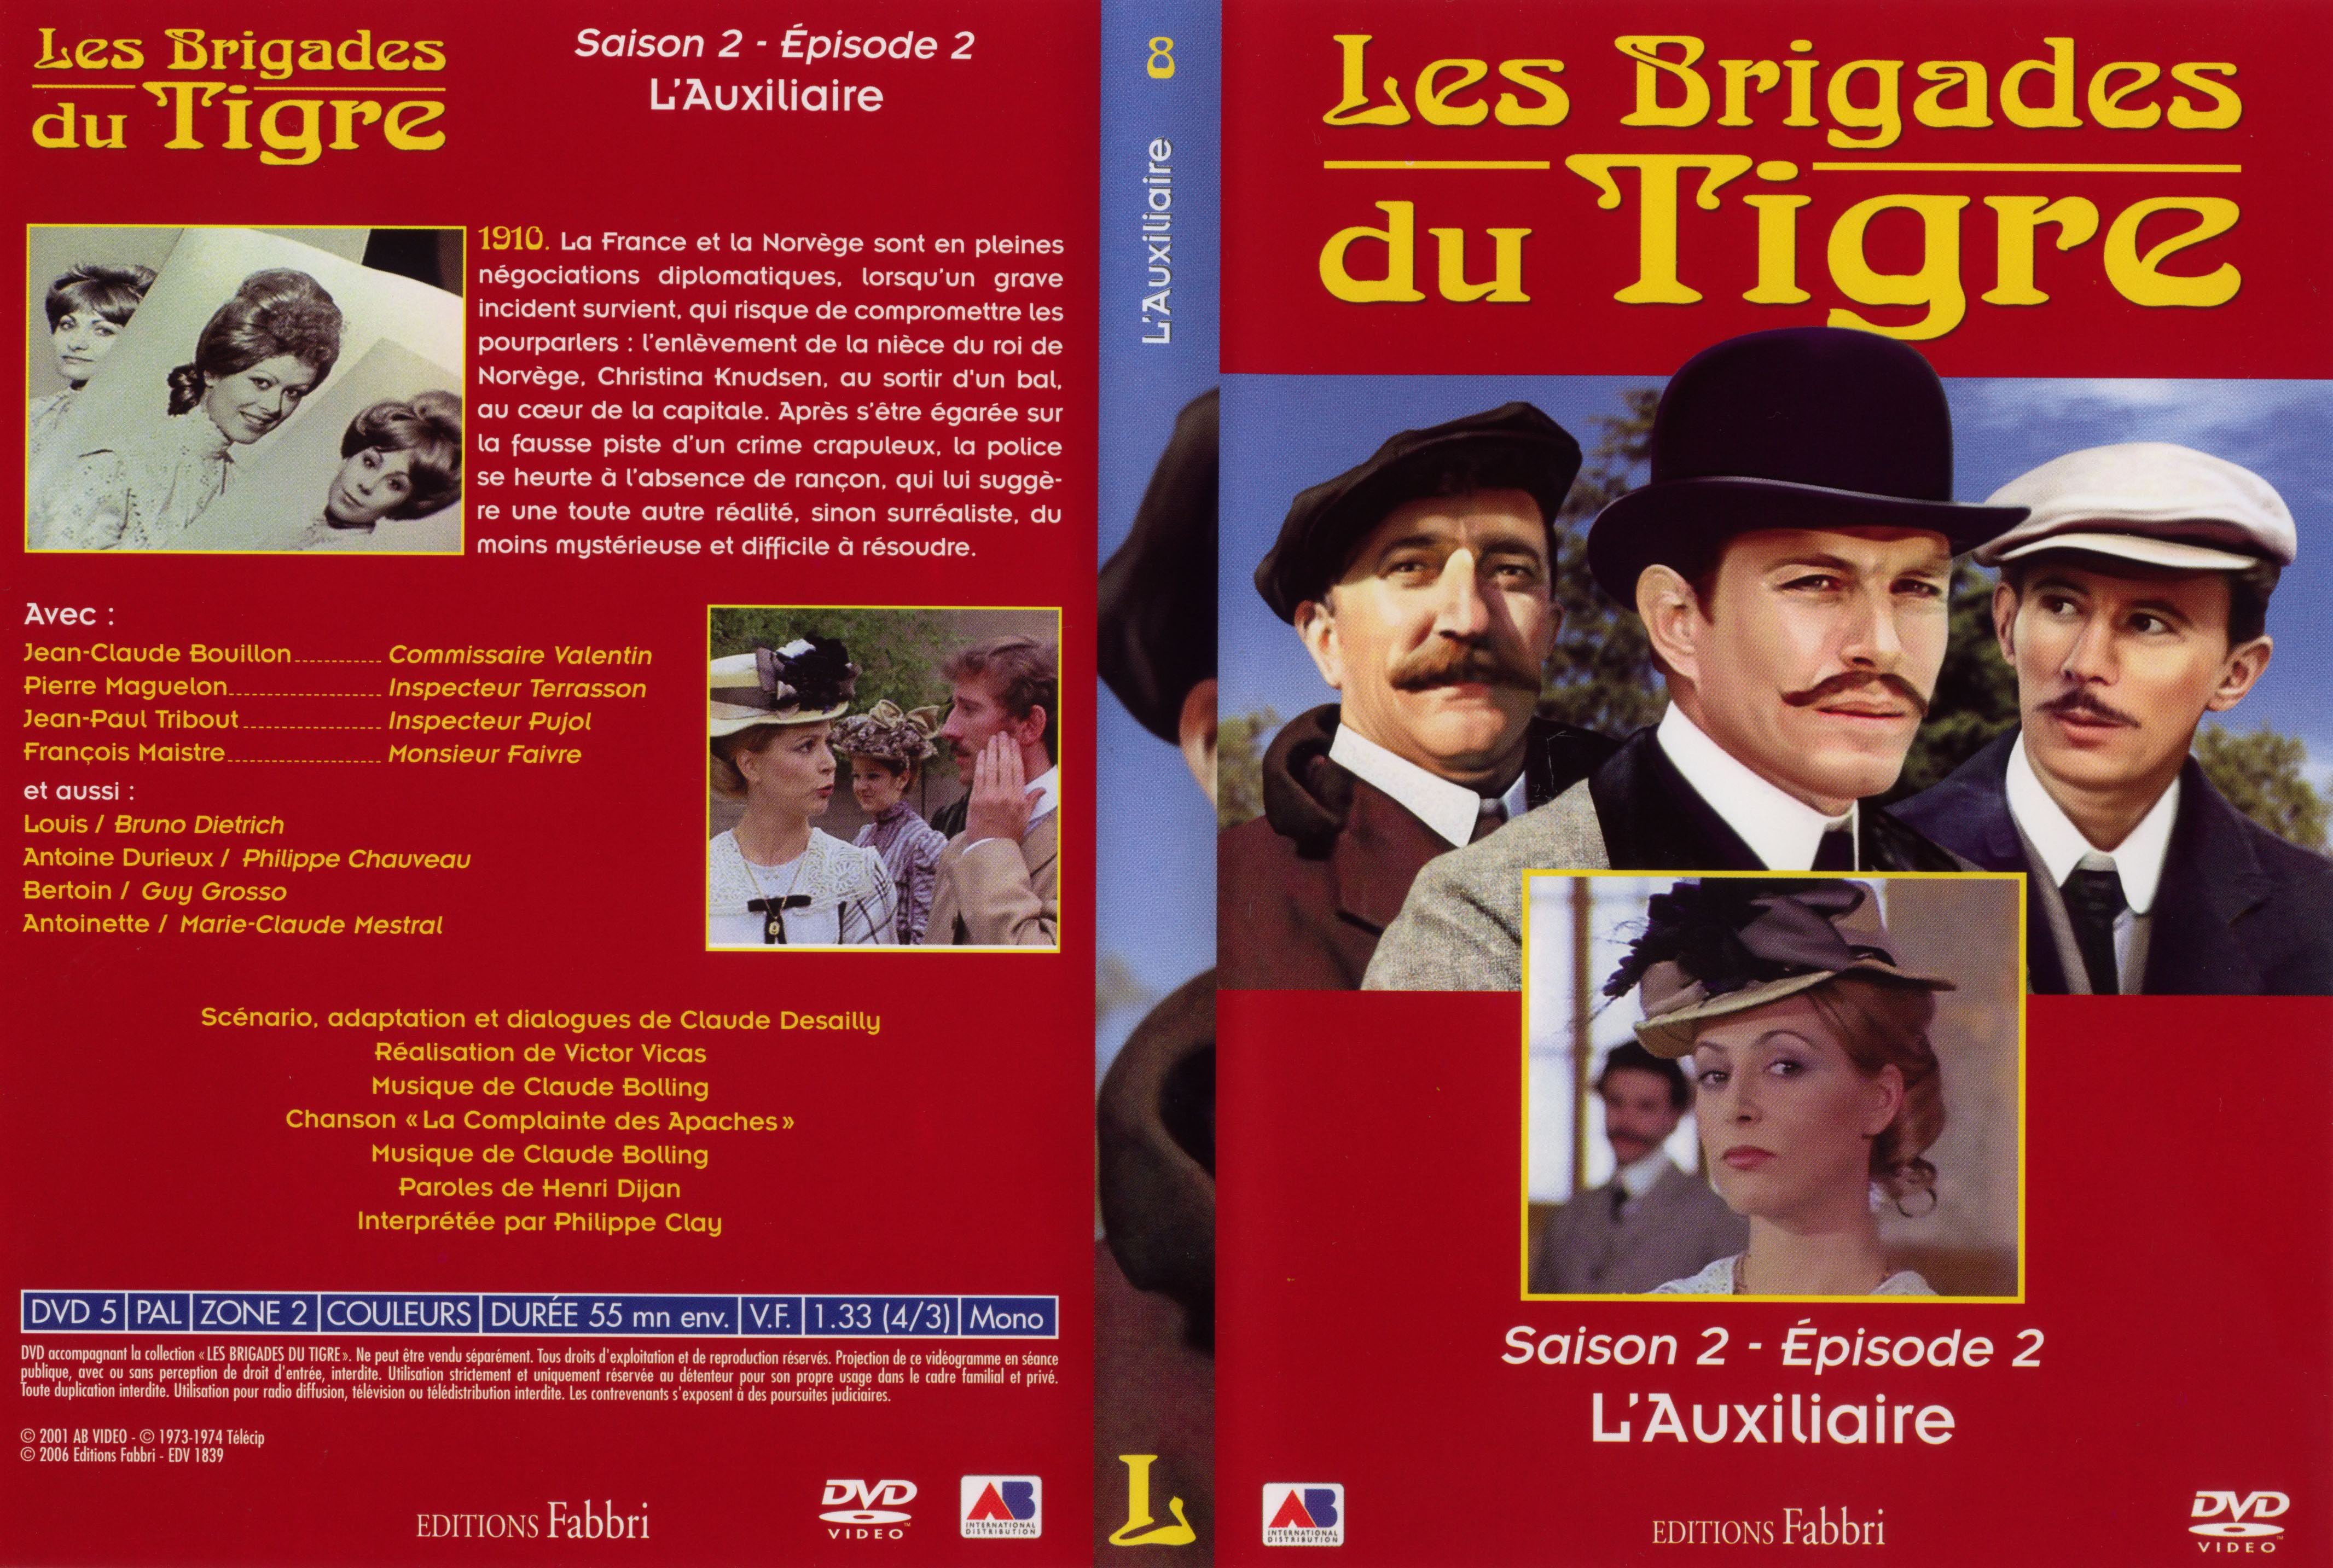 Jaquette DVD Les brigades du tigre saison 2 épisode 2